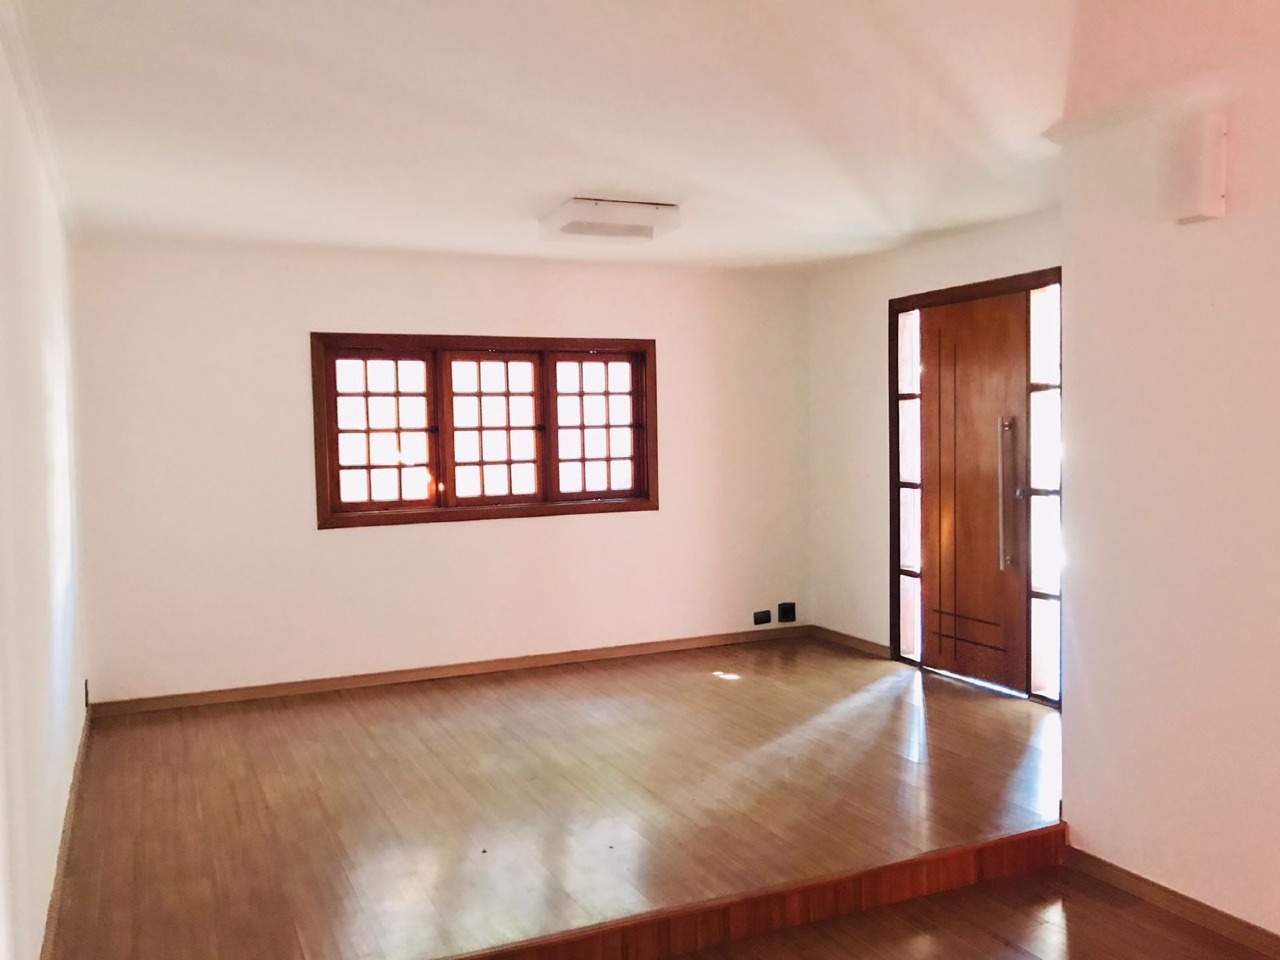 Casa à venda, 3 quartos, 1 suíte, no bairro Castelinho em Piracicaba - SP